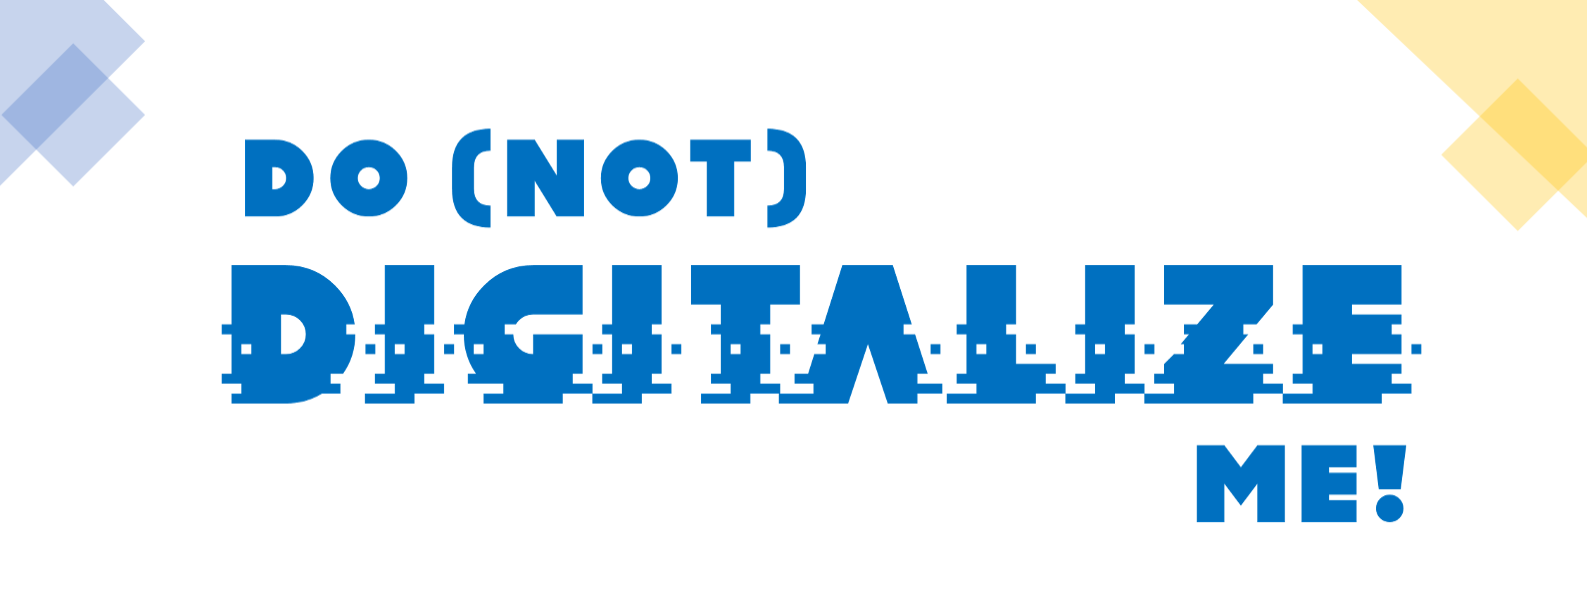 Do(not) digitalize me!